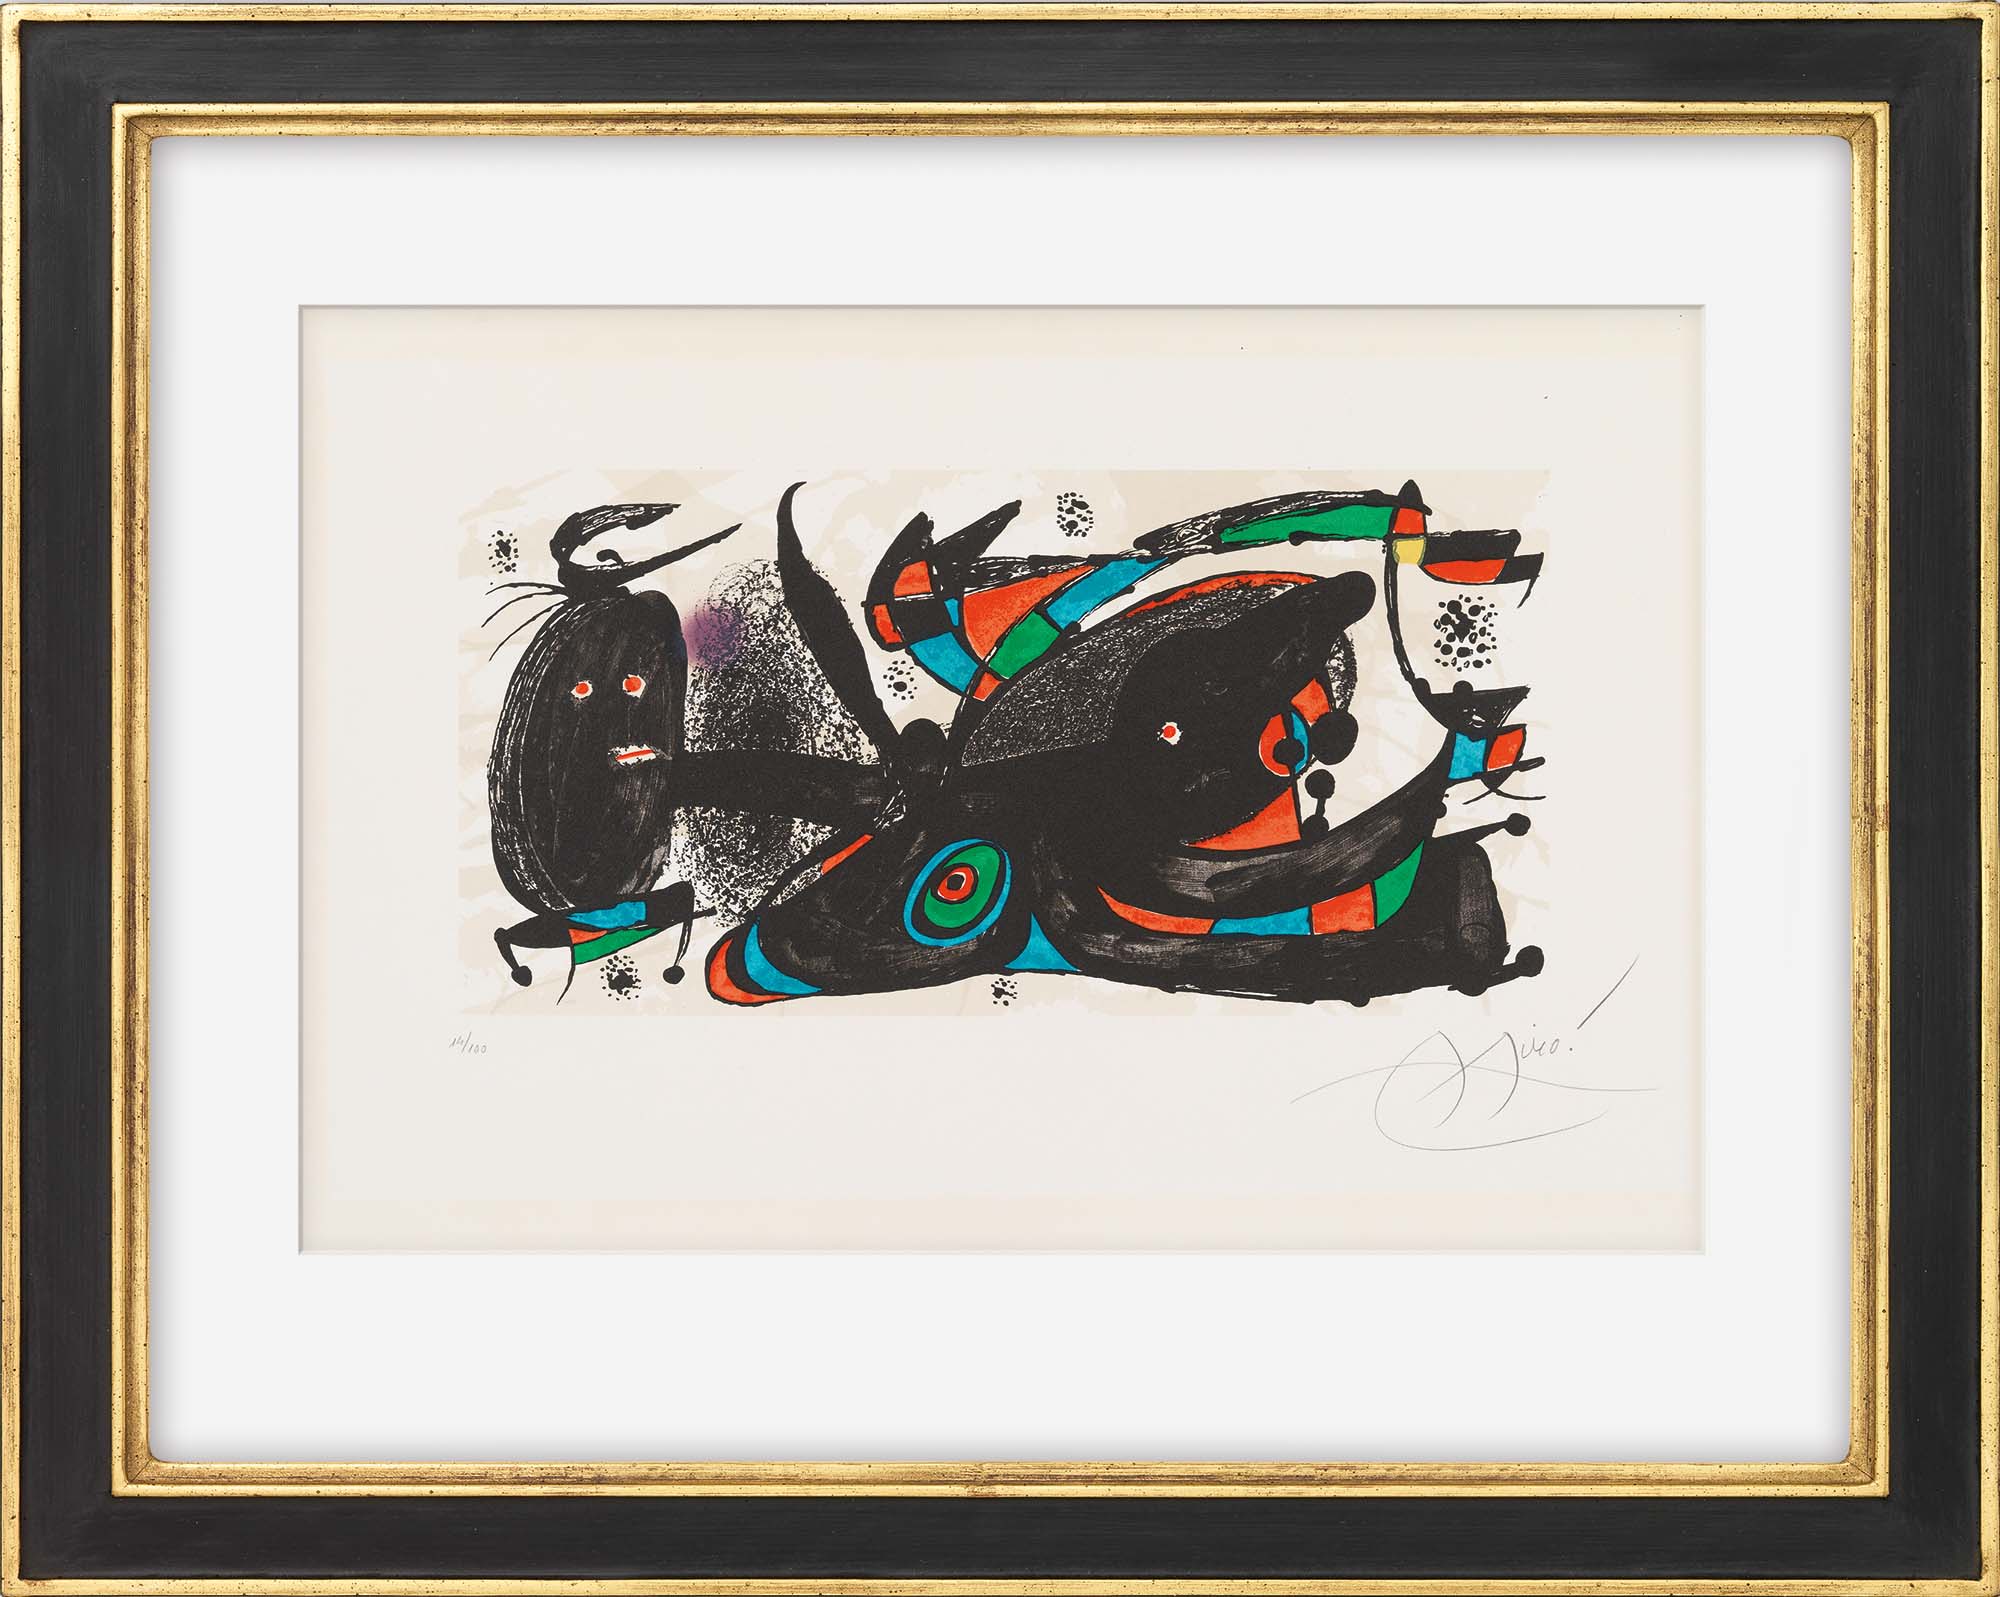 Bild "Miro as Sculptor" (1974) von Joan Miró